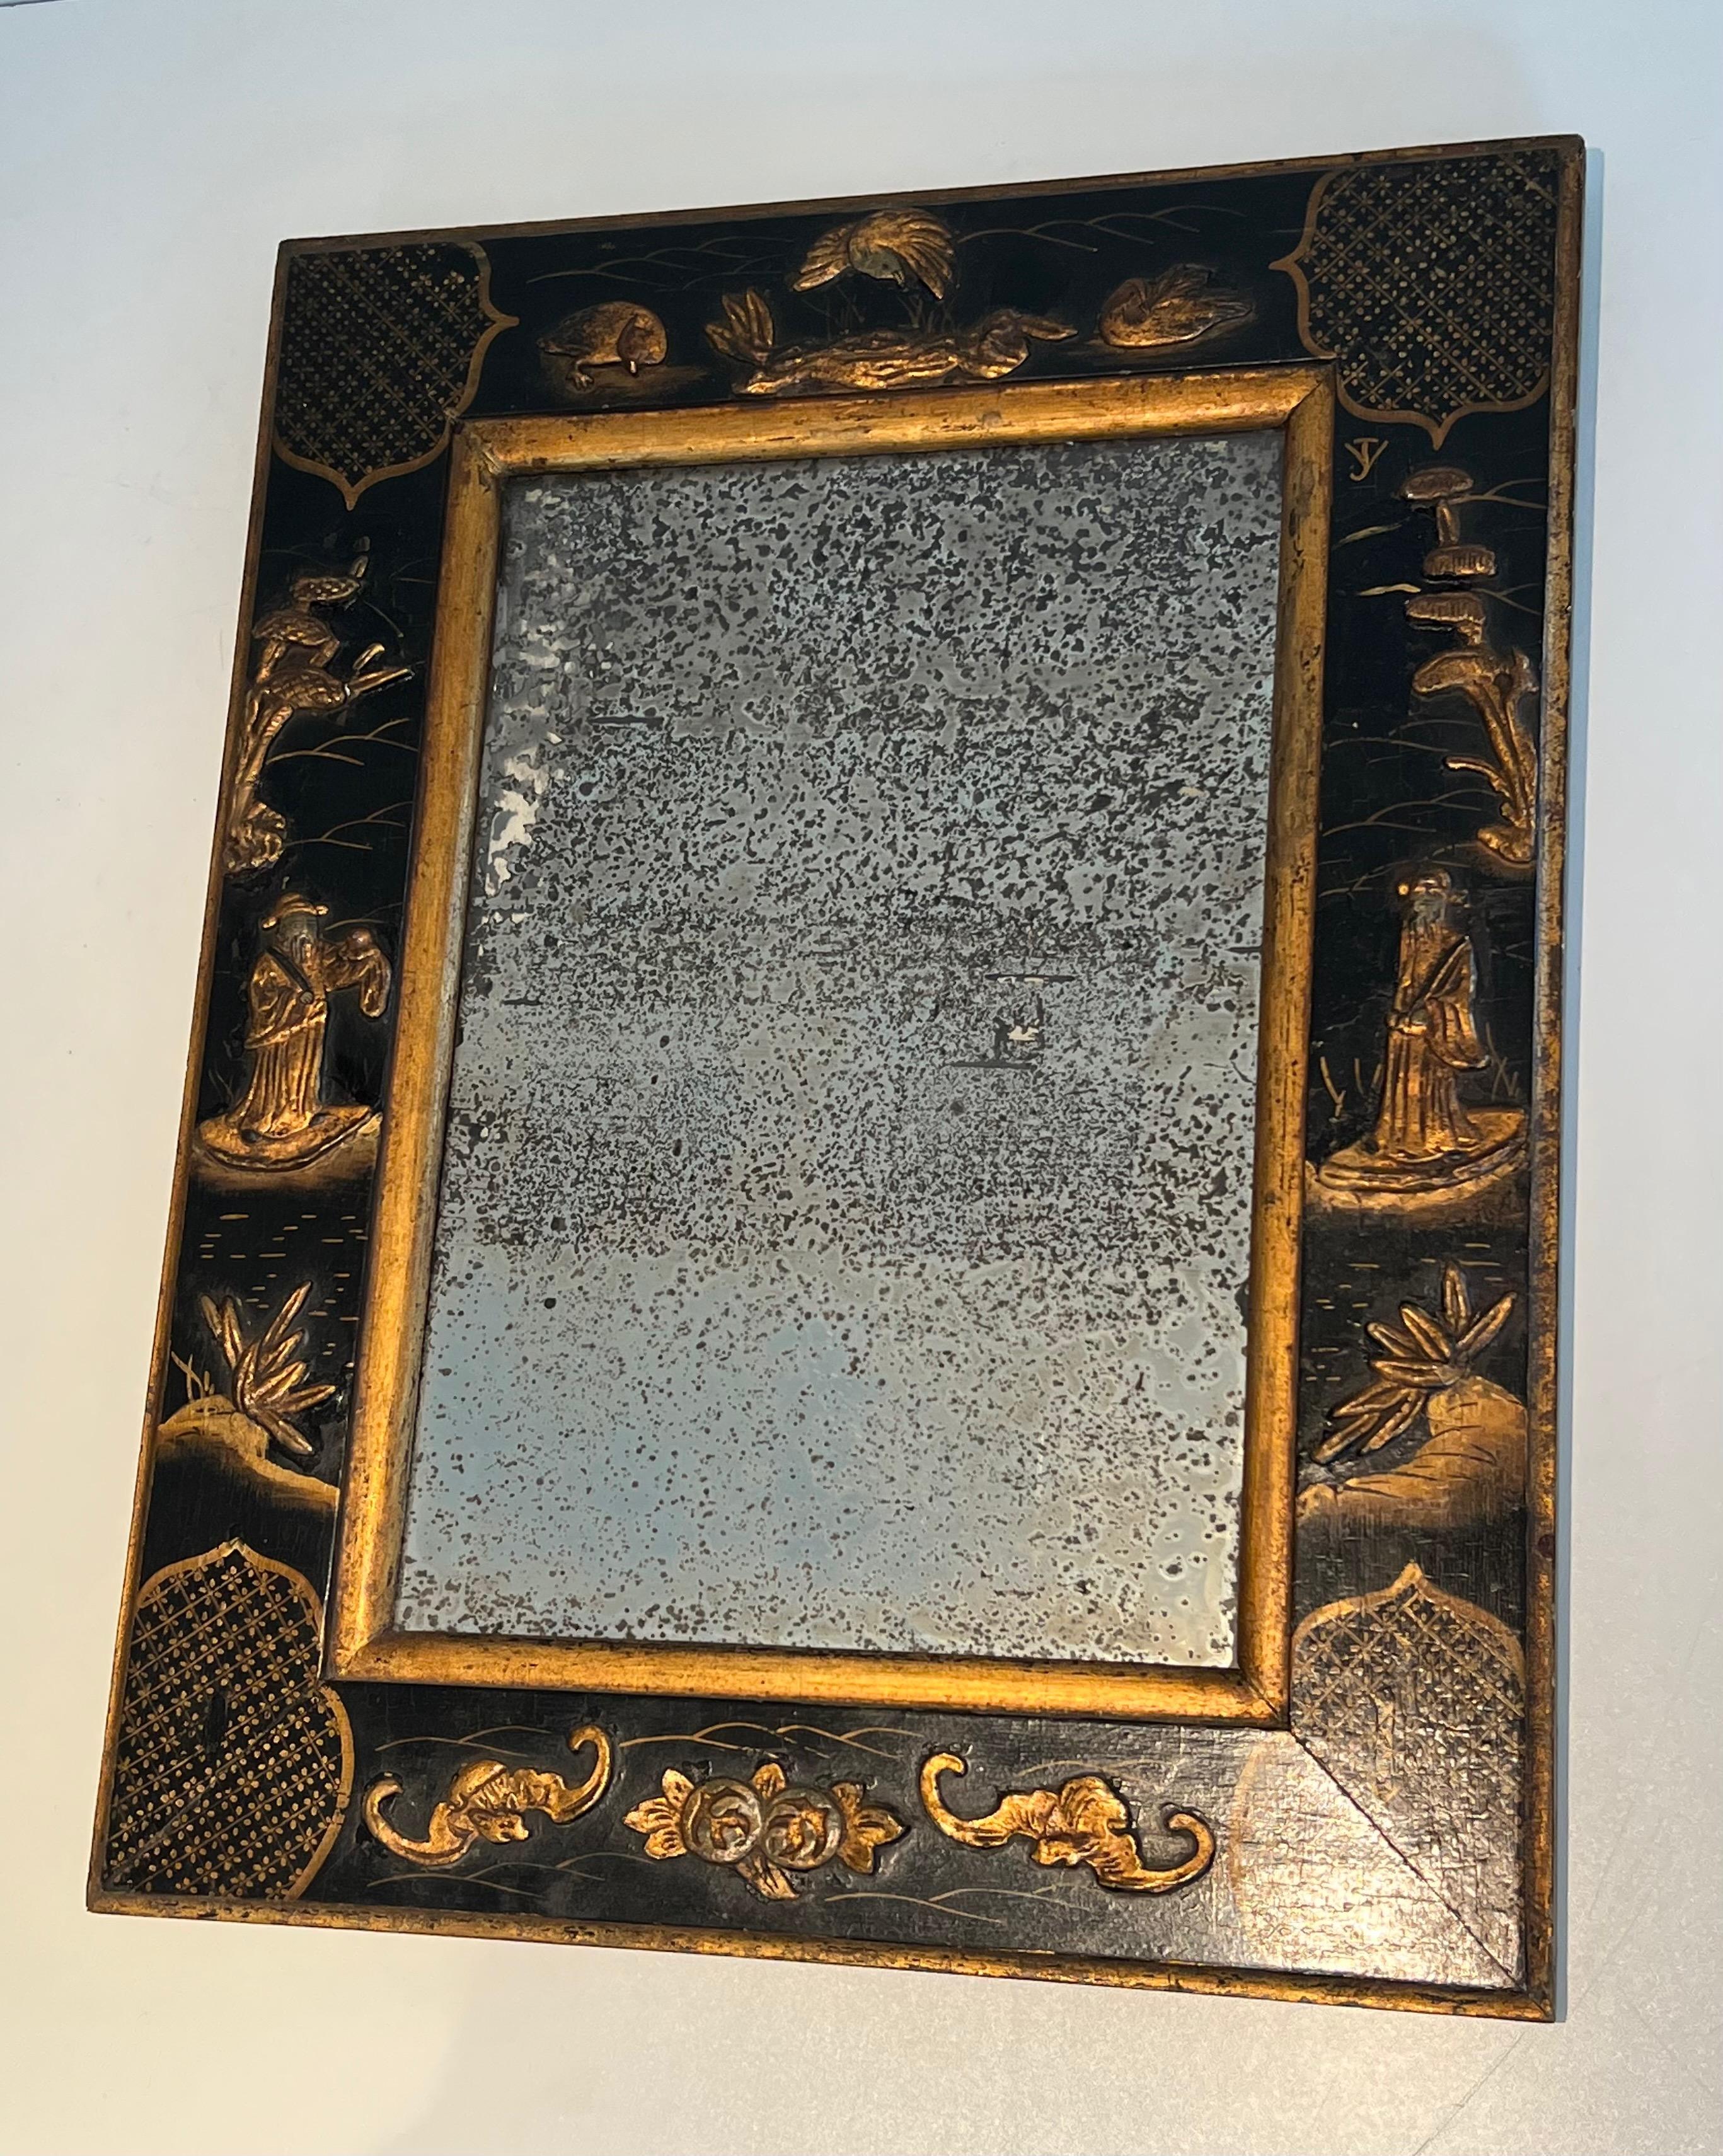 Dieser sehr schöne Spiegel besteht aus einem alten Quecksilberspiegel, der von einem schön lackierten und mit chinesischen Szenen vergoldeten Holzrahmen umgeben ist. Es handelt sich um ein französisches Werk im Stil von Maison Jansen. CIRCA 1940